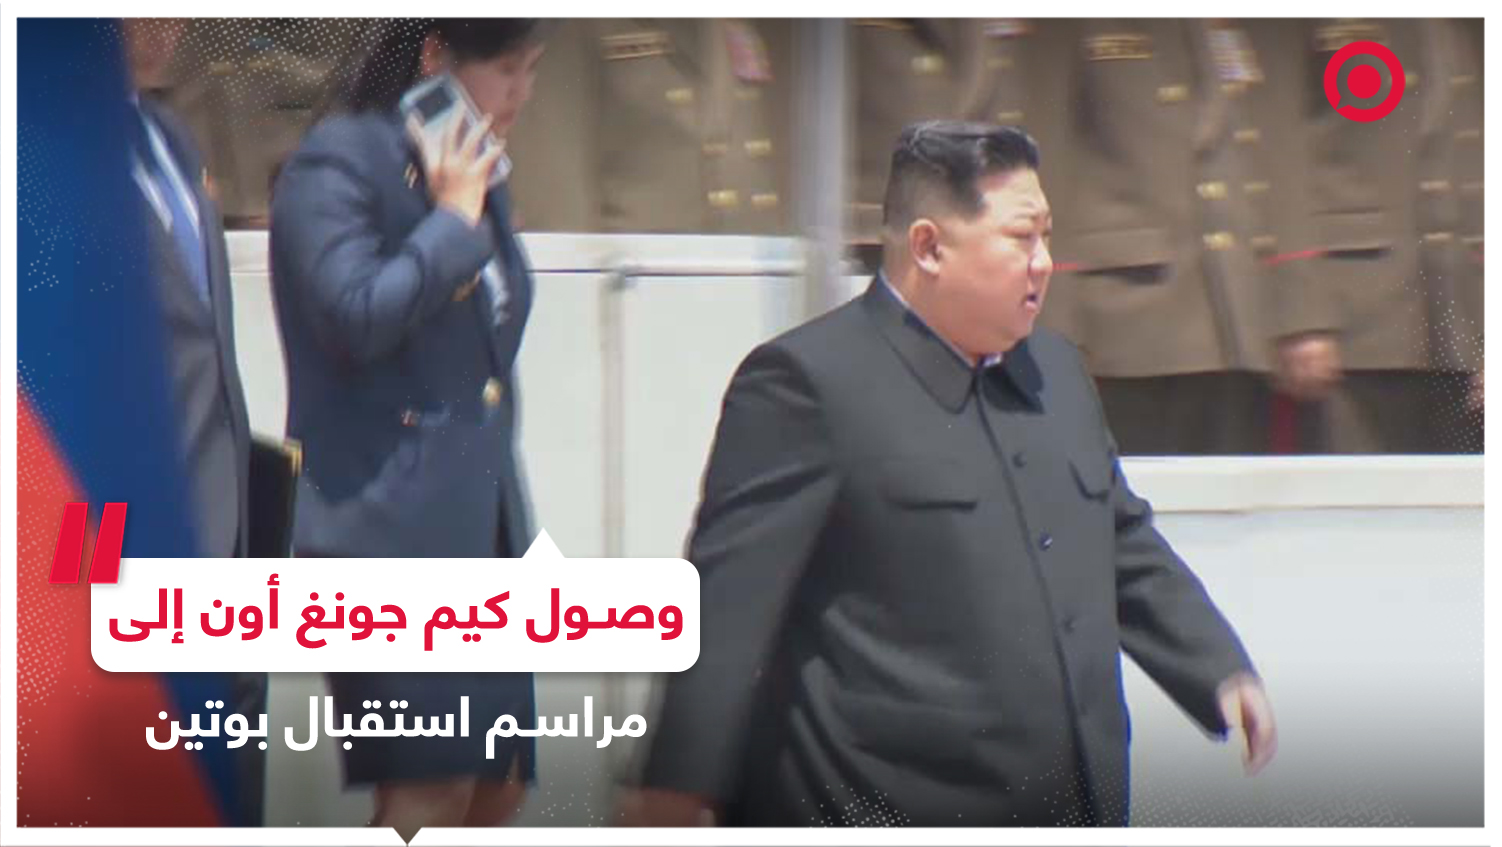 لحظة وصول كيم جونغ أون إلى مراسم الاستقبال الرسمية قبيل وصول الرئيس بوتين